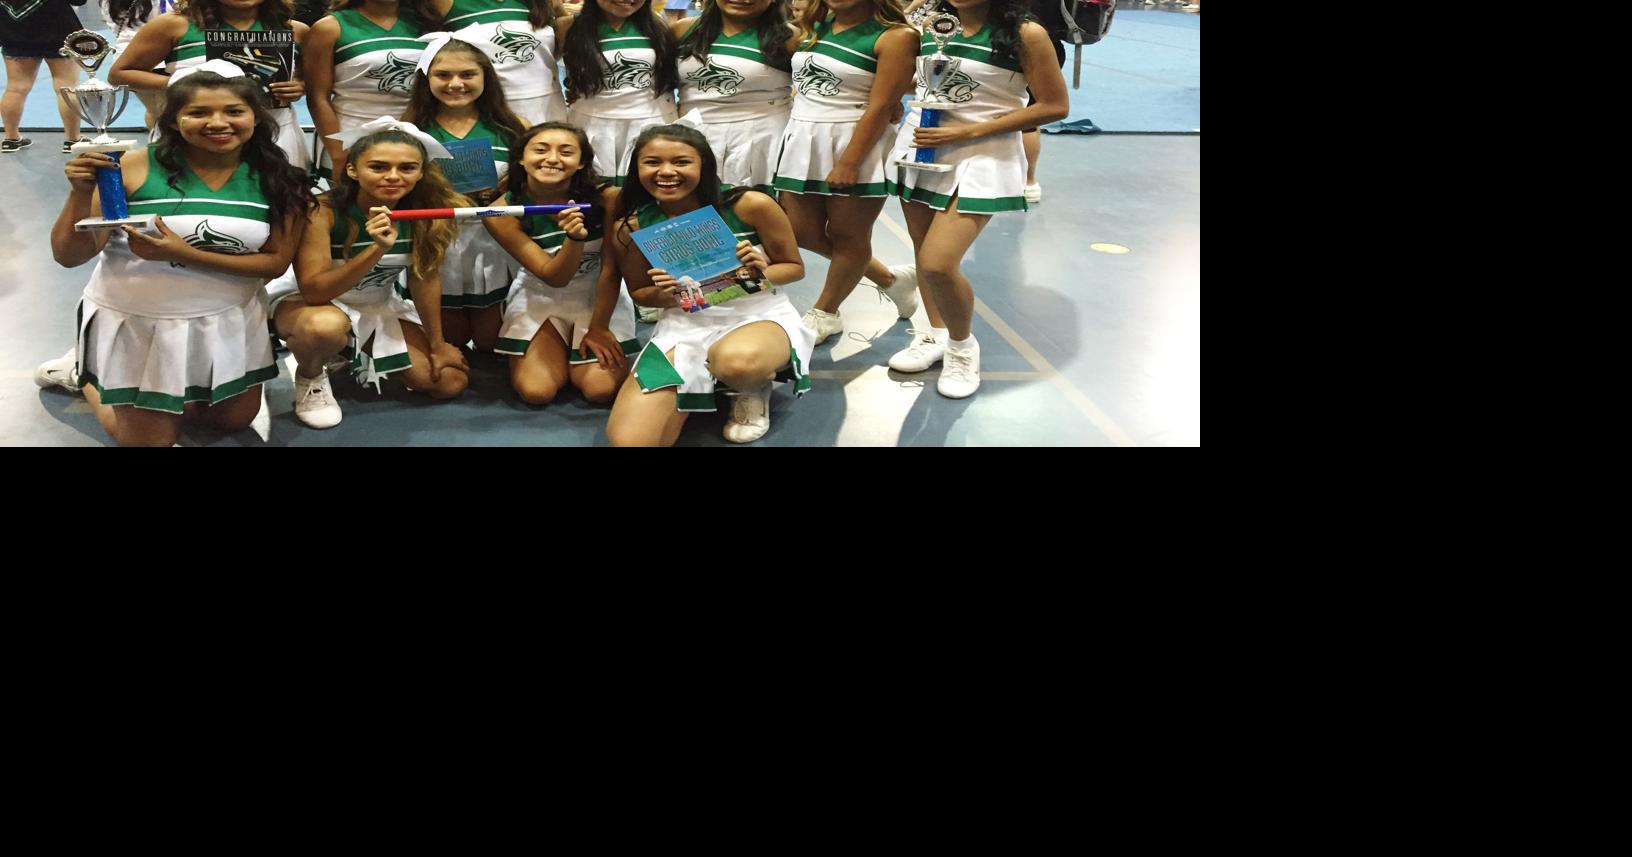 colegioparaisosbc #cheerleaders @_maggalhaes_ @dudasoares22